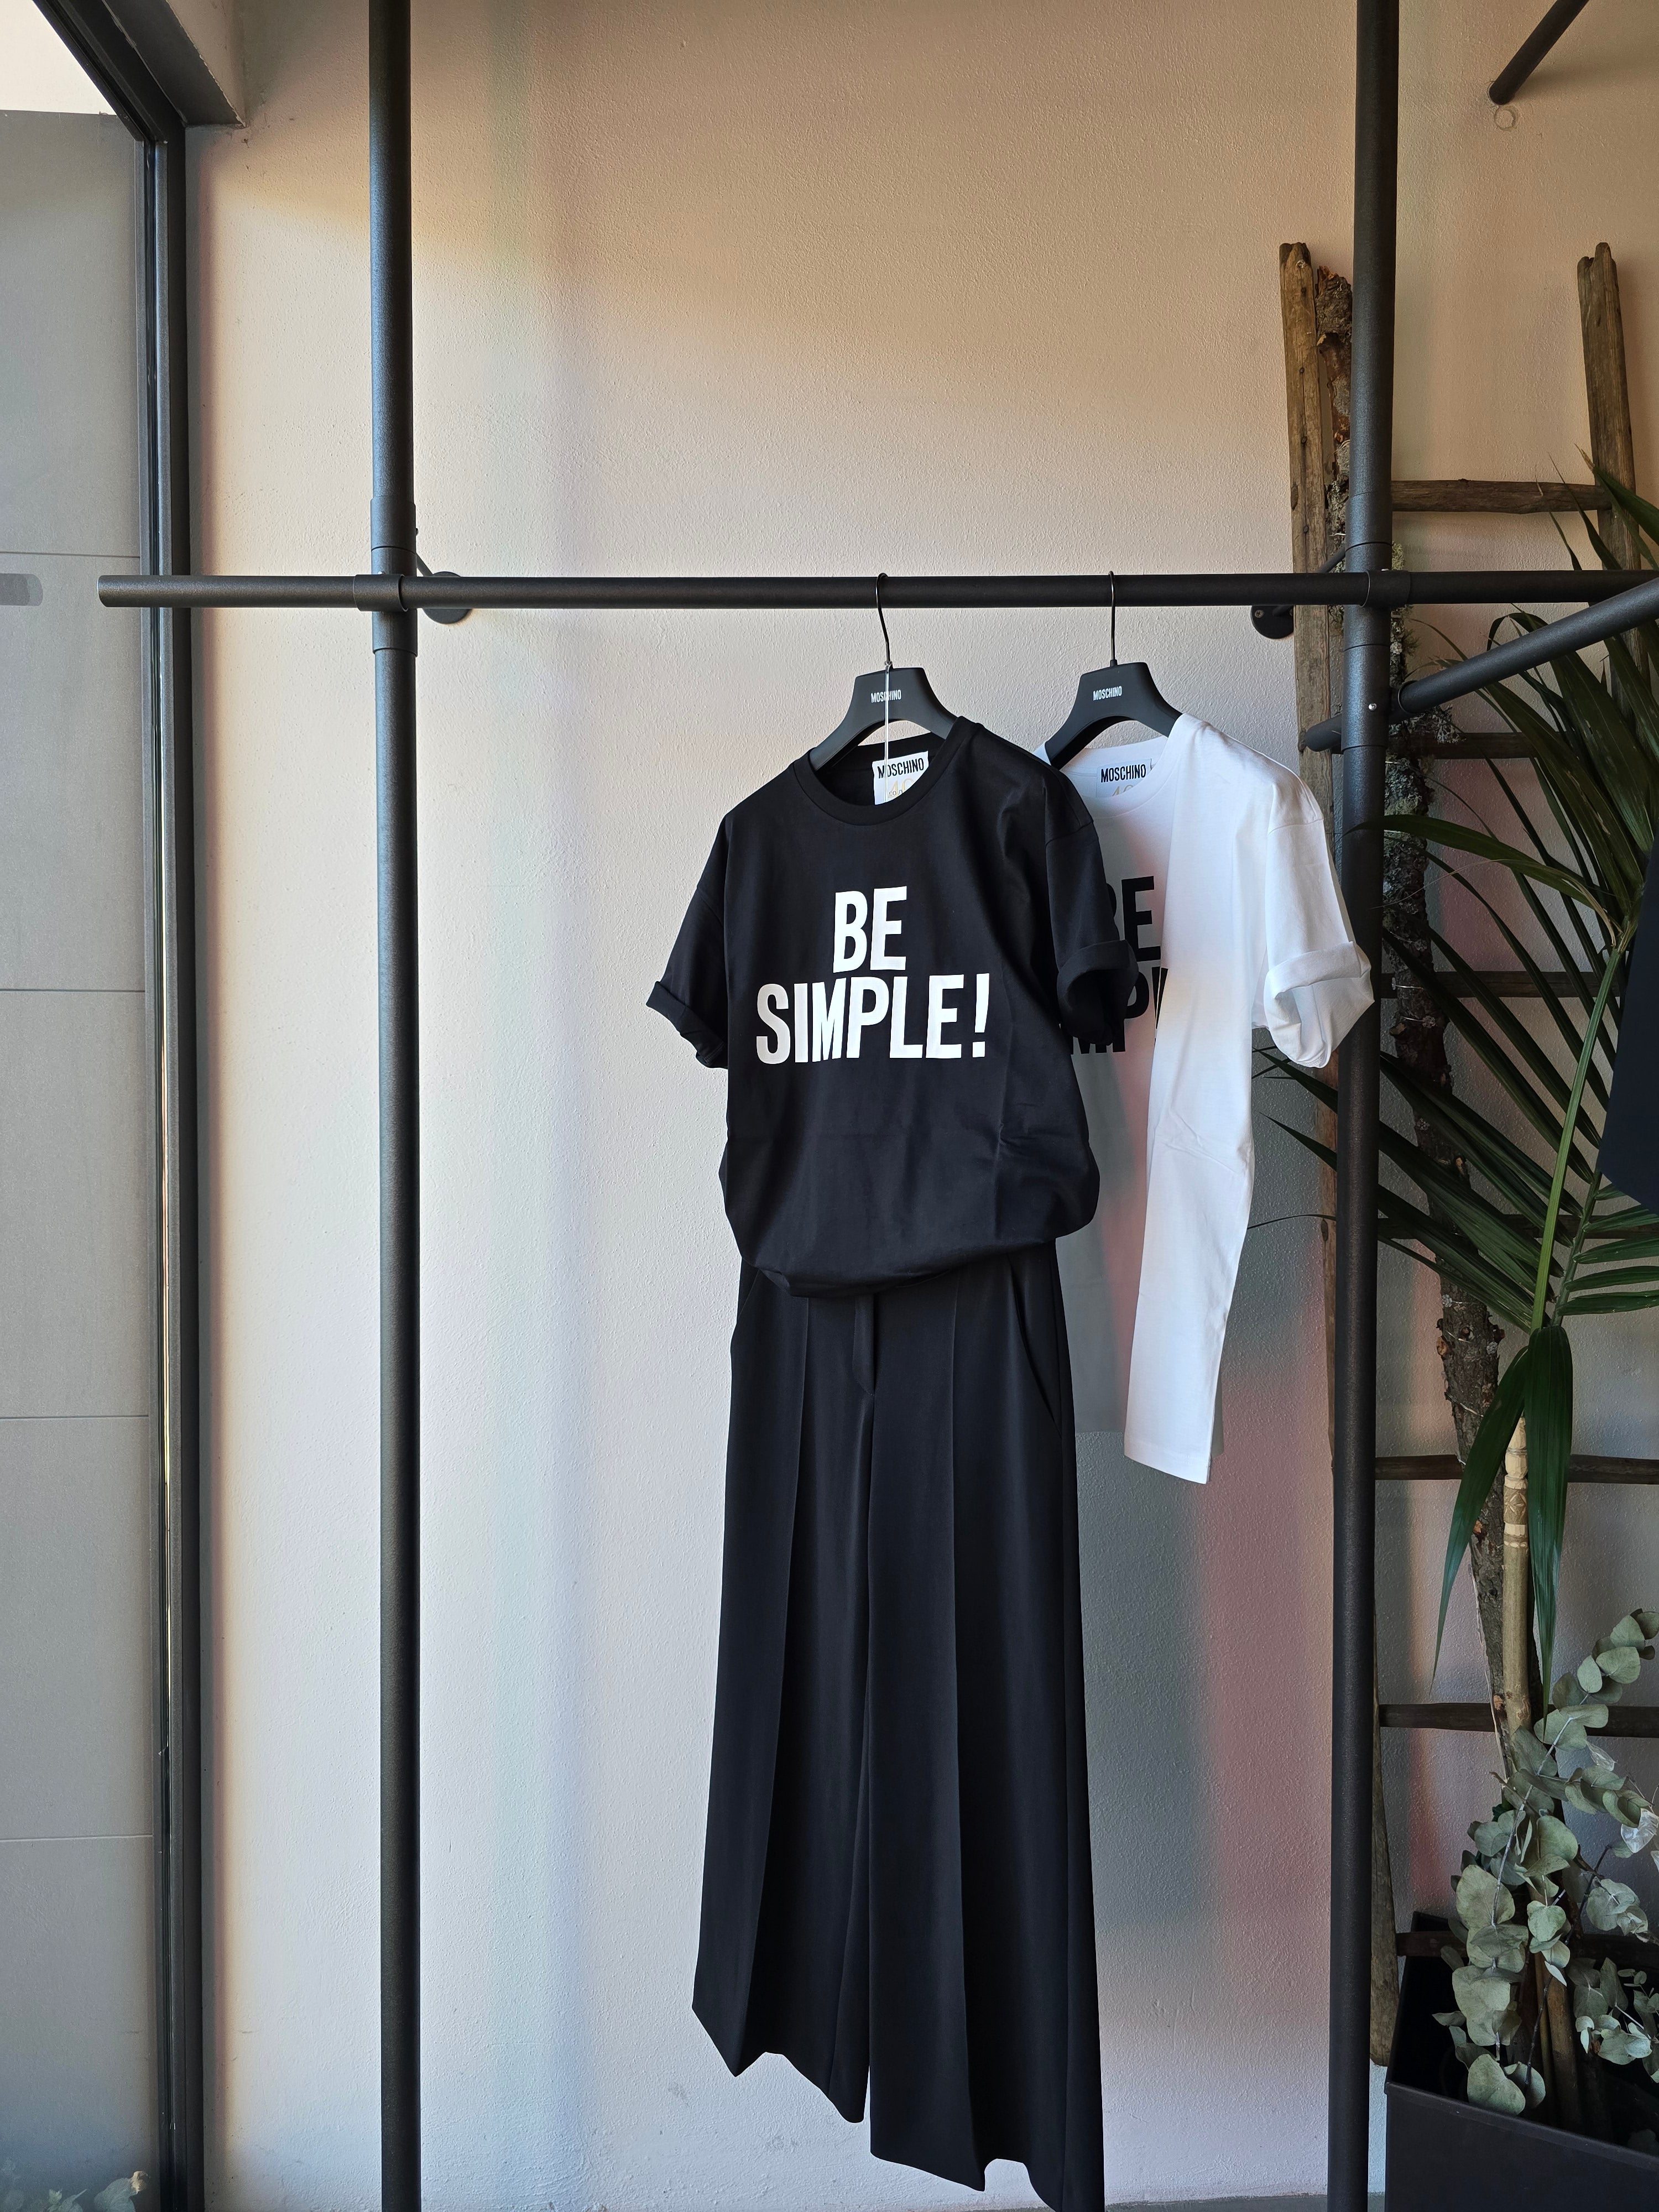 Moschino - T-shirt "Be Simple!" Nera